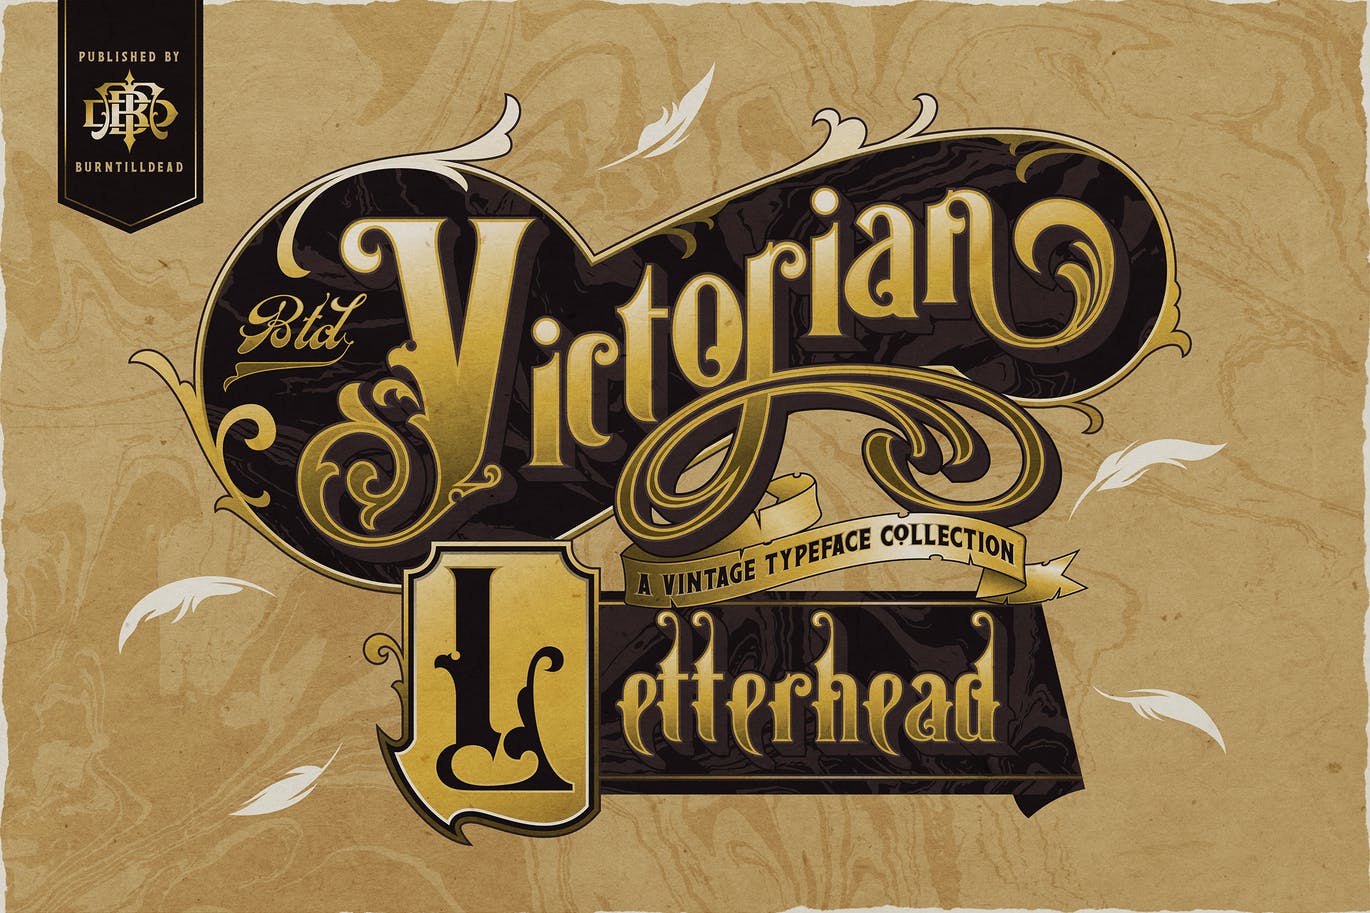 复古维多利亚版式设计衬线字体素材 Victorian Letterhead 设计素材 第1张